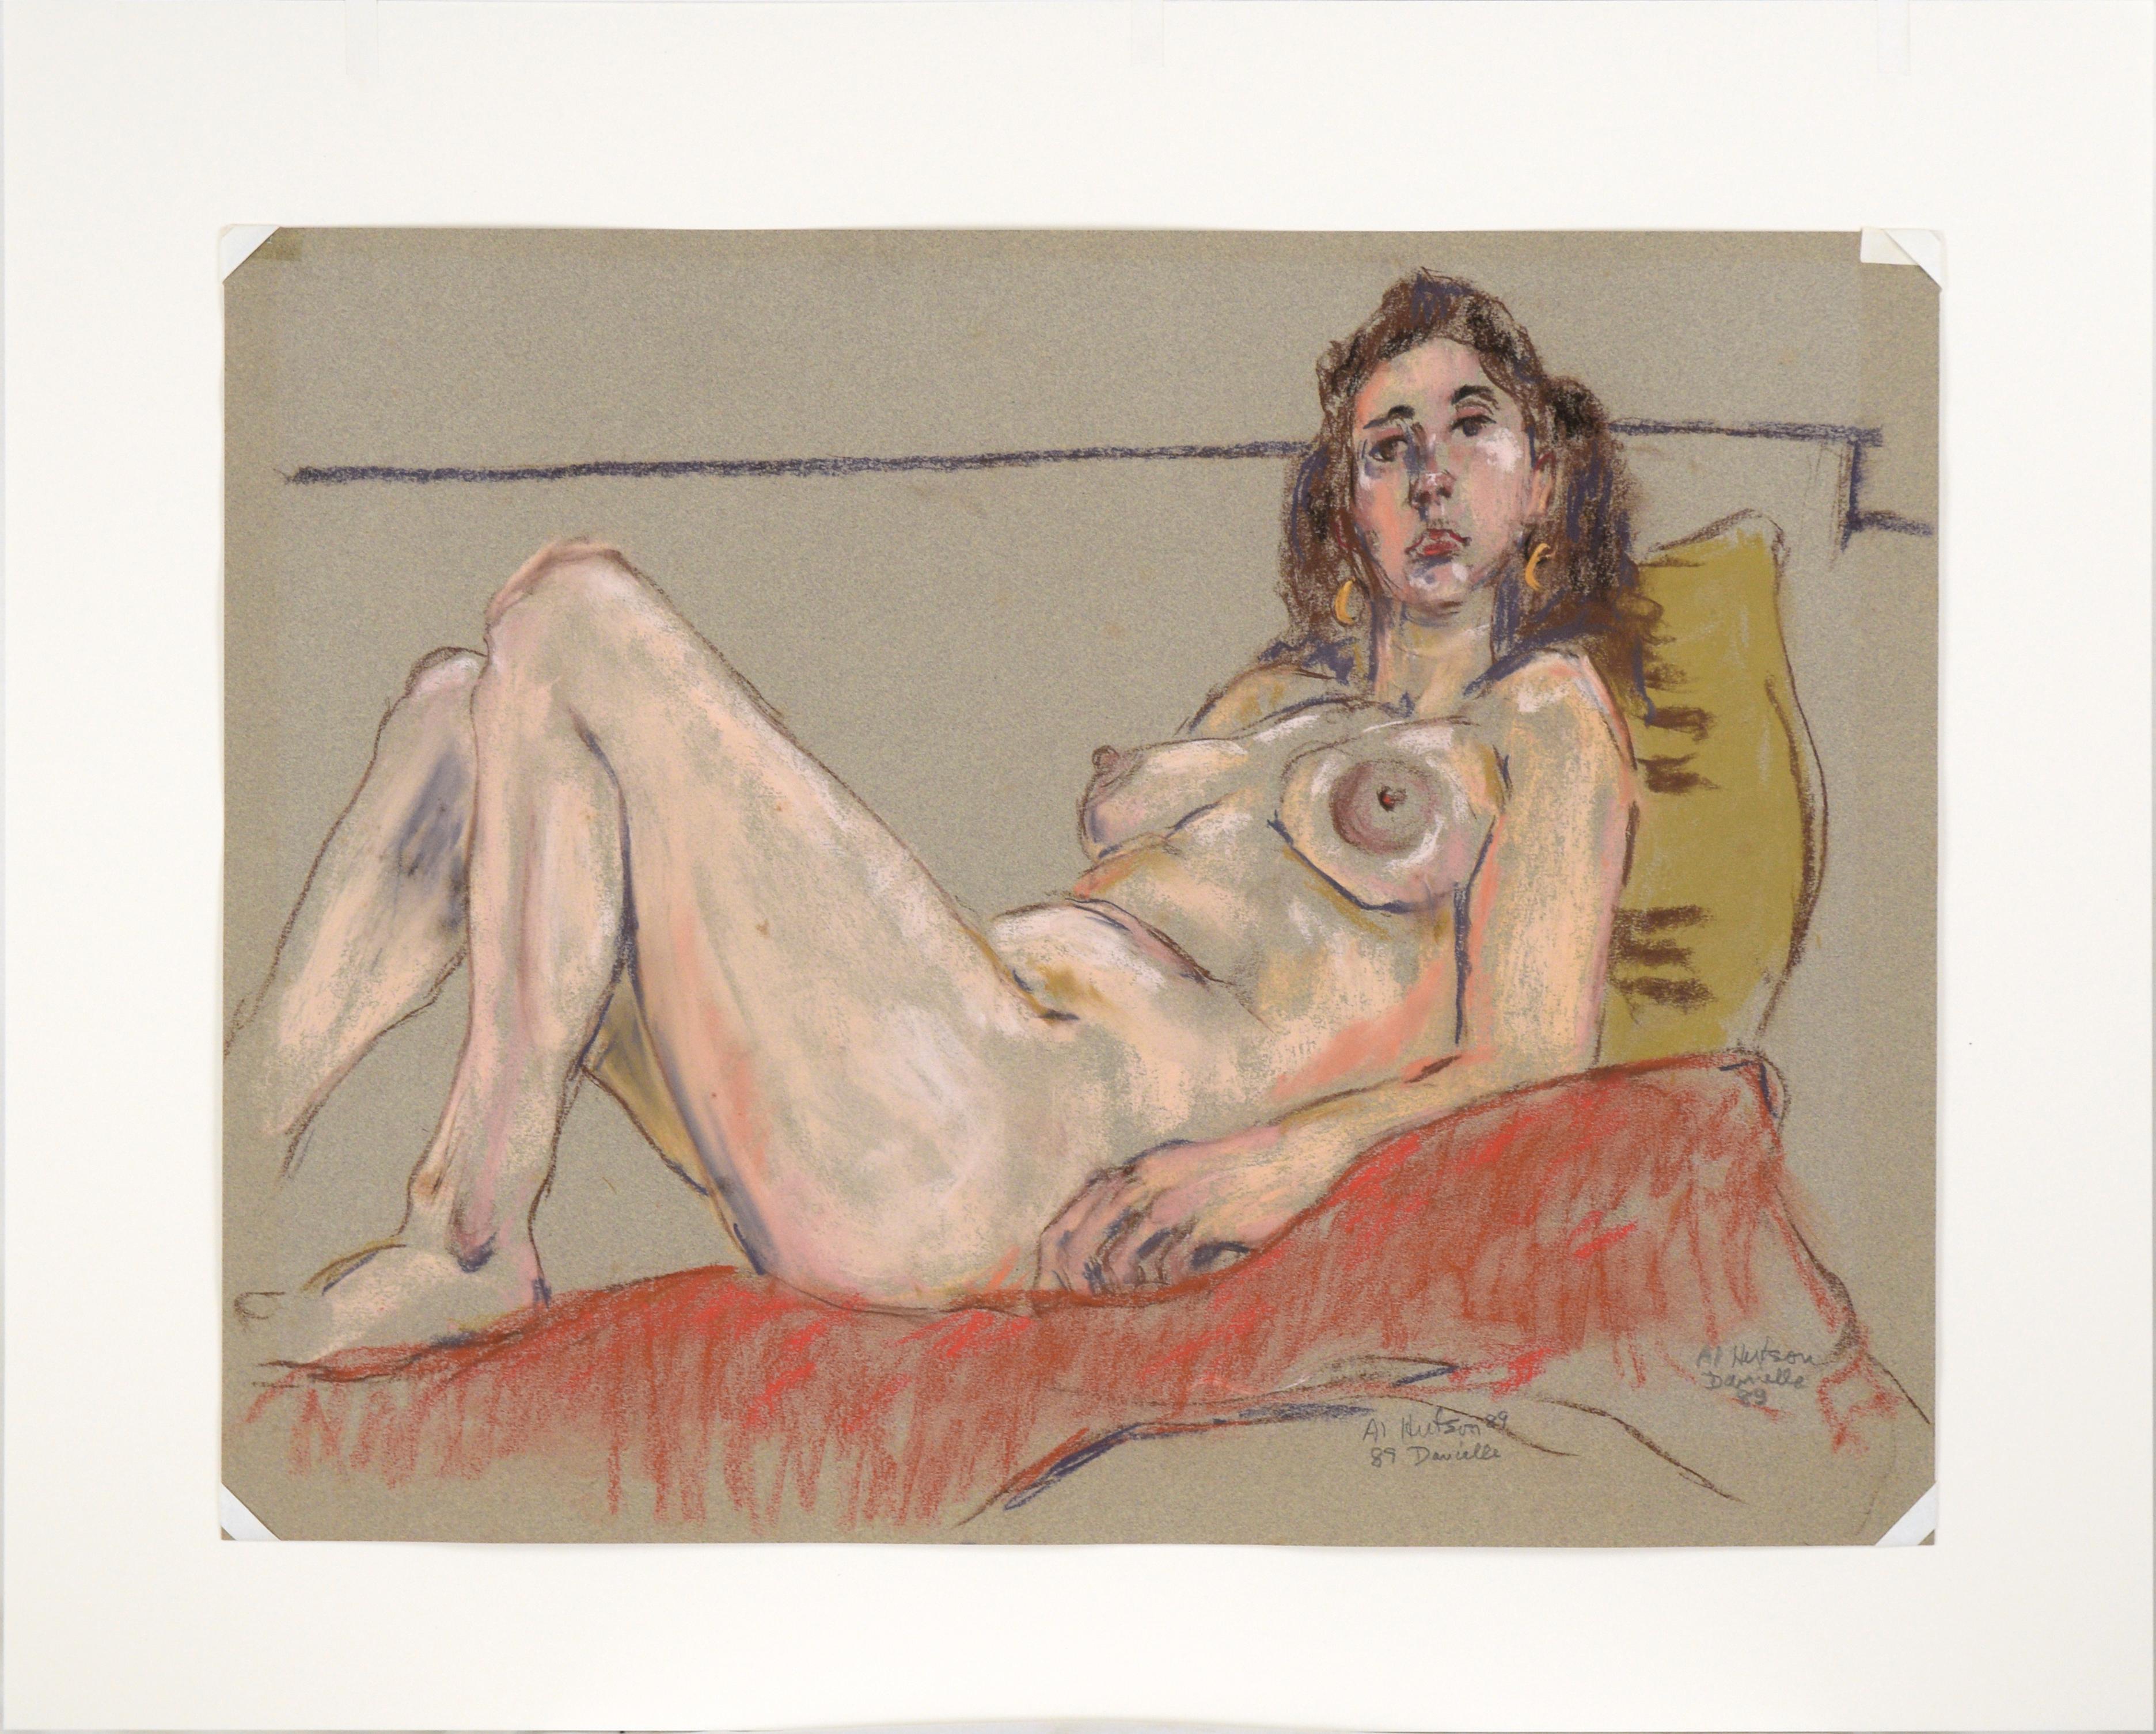 Dessin au pastel d'un nu audacieux par Albert Hutson (américain, 1923-1994). Une femme est allongée sur une surface rouge douce, appuyée contre un oreiller jaune. Le modèle est habilement esquissé, avec des marques rapides mais sûres. Hutson a saisi